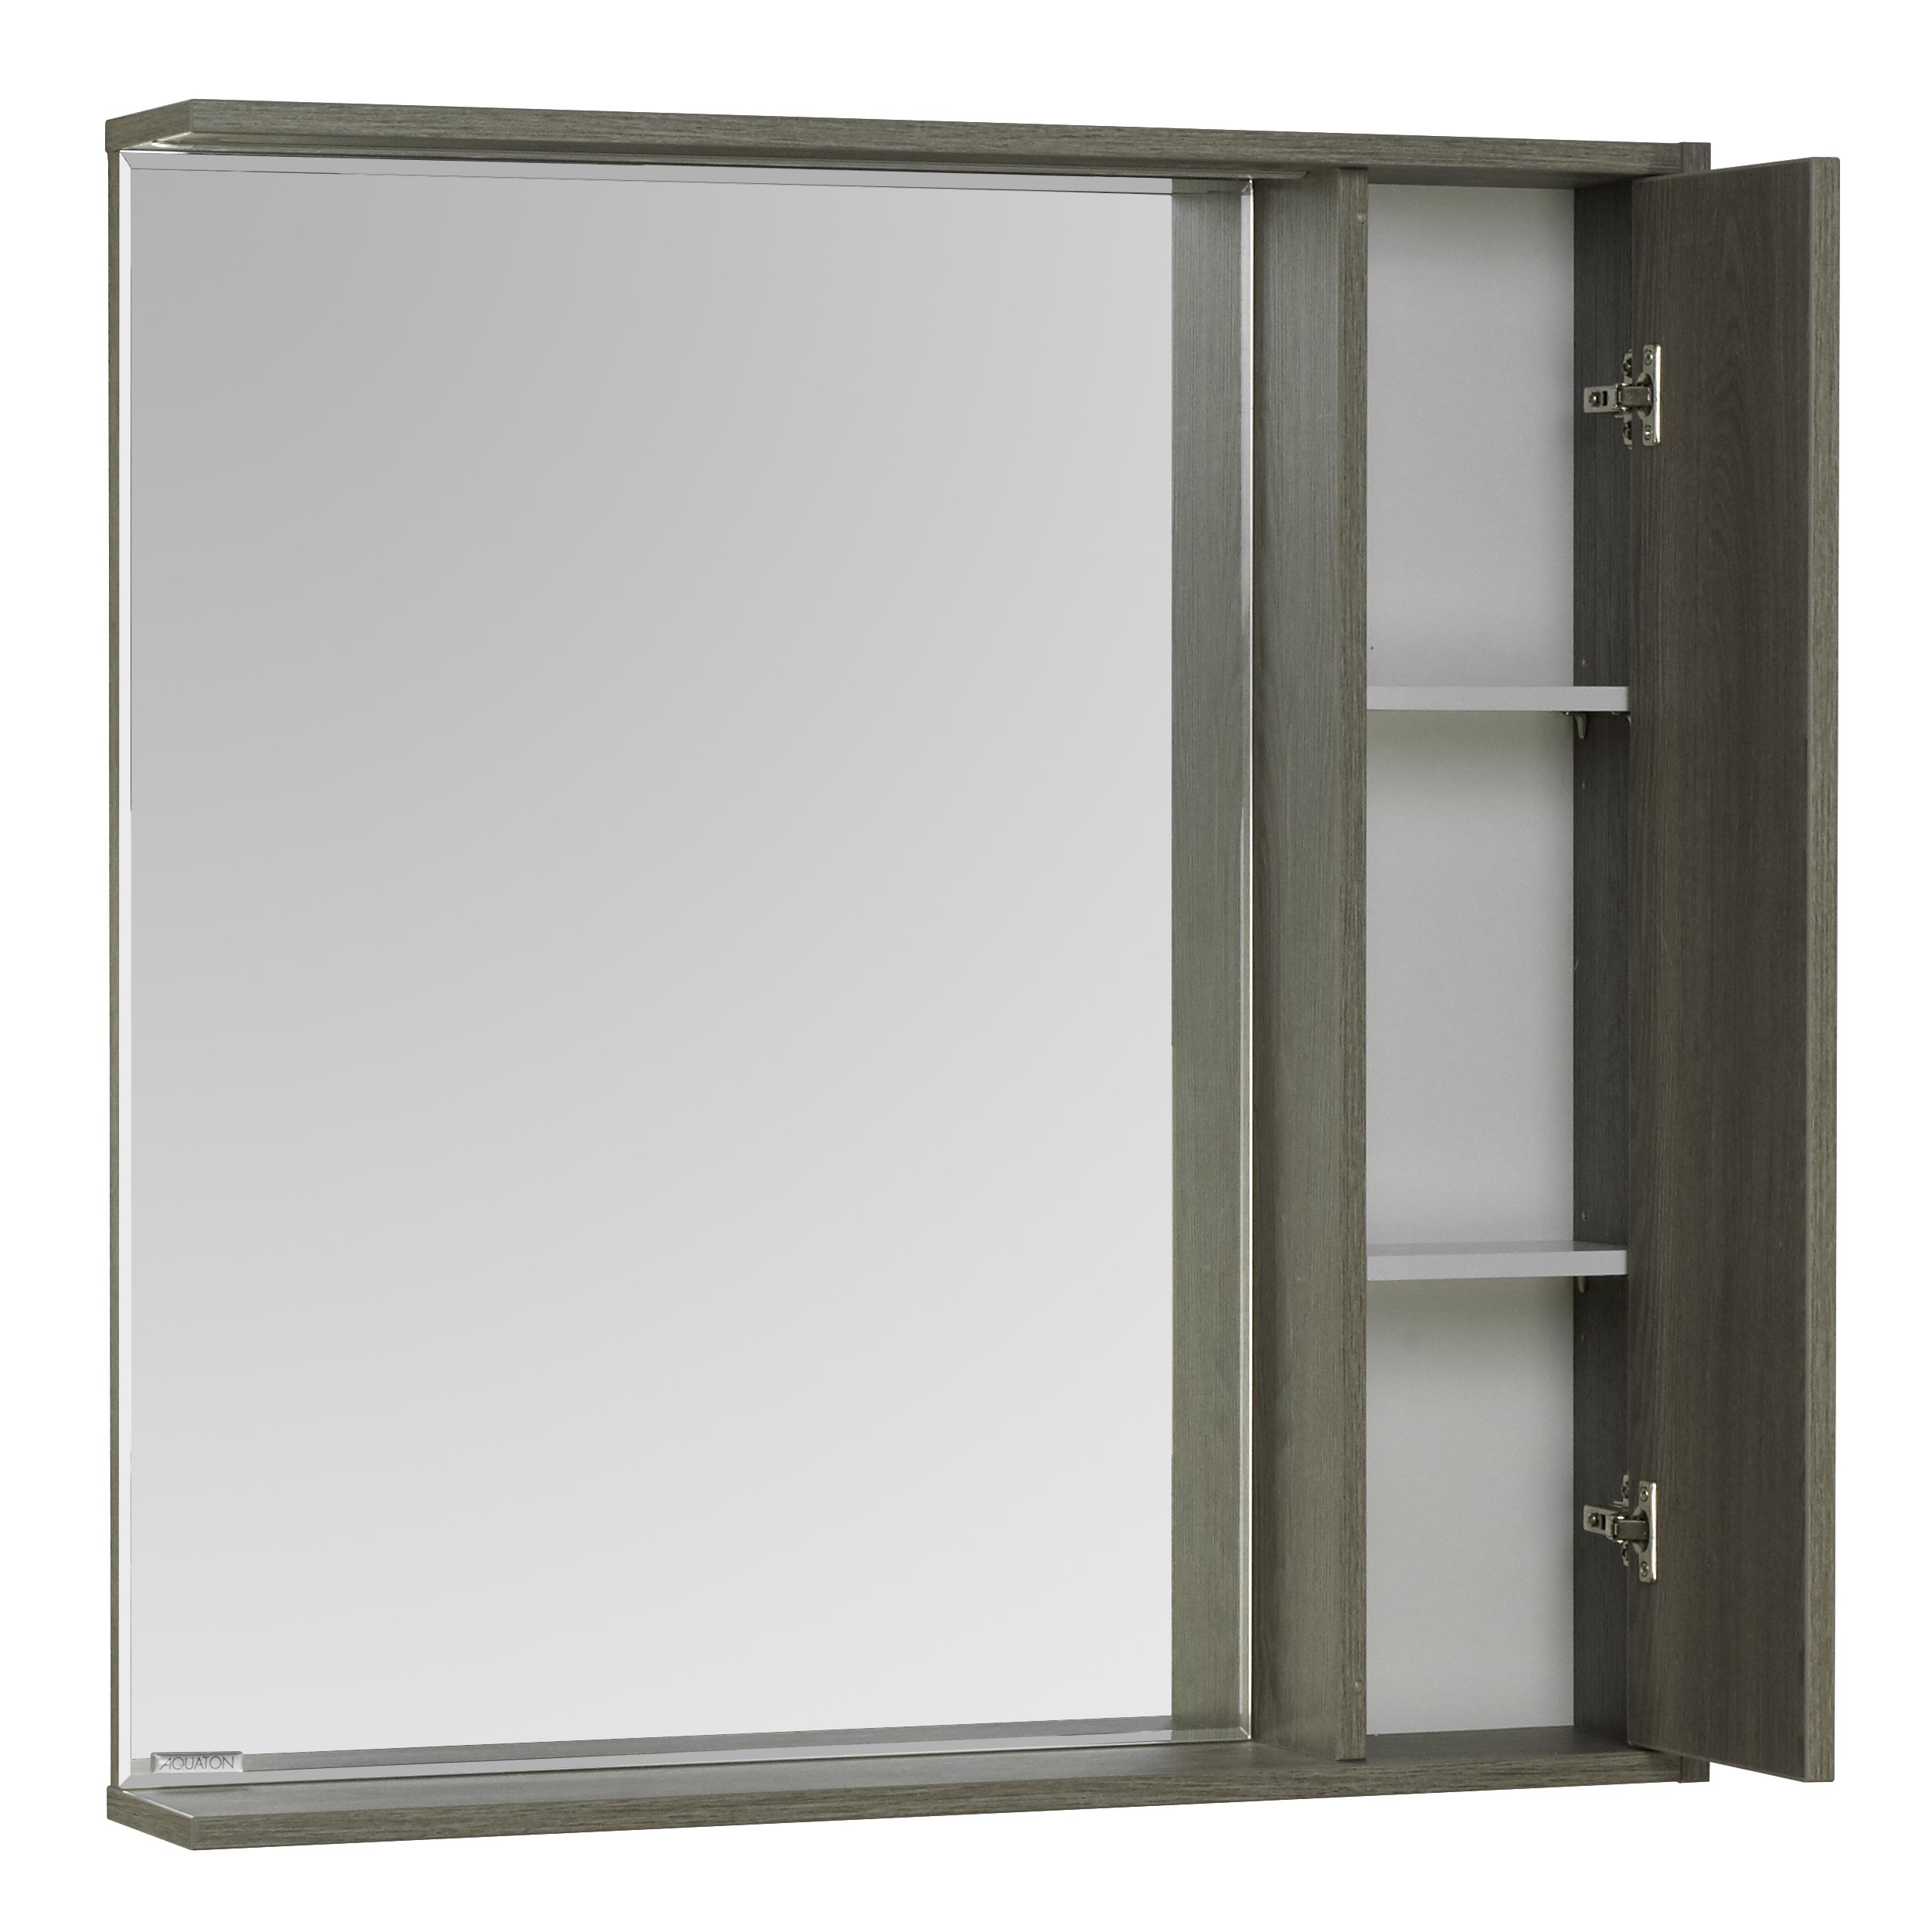 Зеркальный шкаф Aquaton Стоун 1A228302SXC80 80 x 83.3 см, с подсветкой, грецкий орех